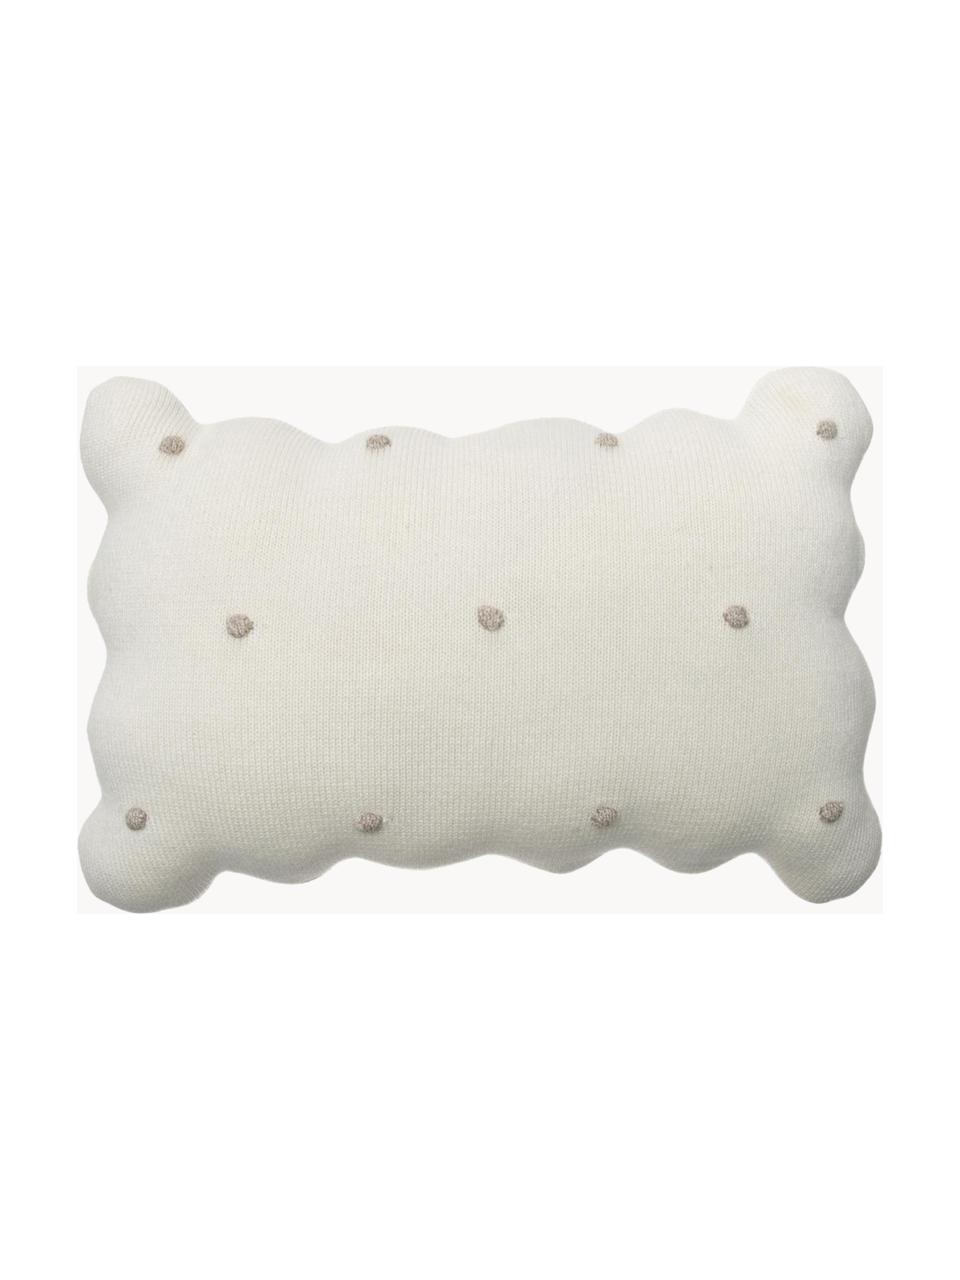 Cuscino morbido in cotone ricamato a mano Biscuit, Rivestimento: 100% cotone, Bianco latte, beige chiaro, Larg. 25 x Lung. 35 cm